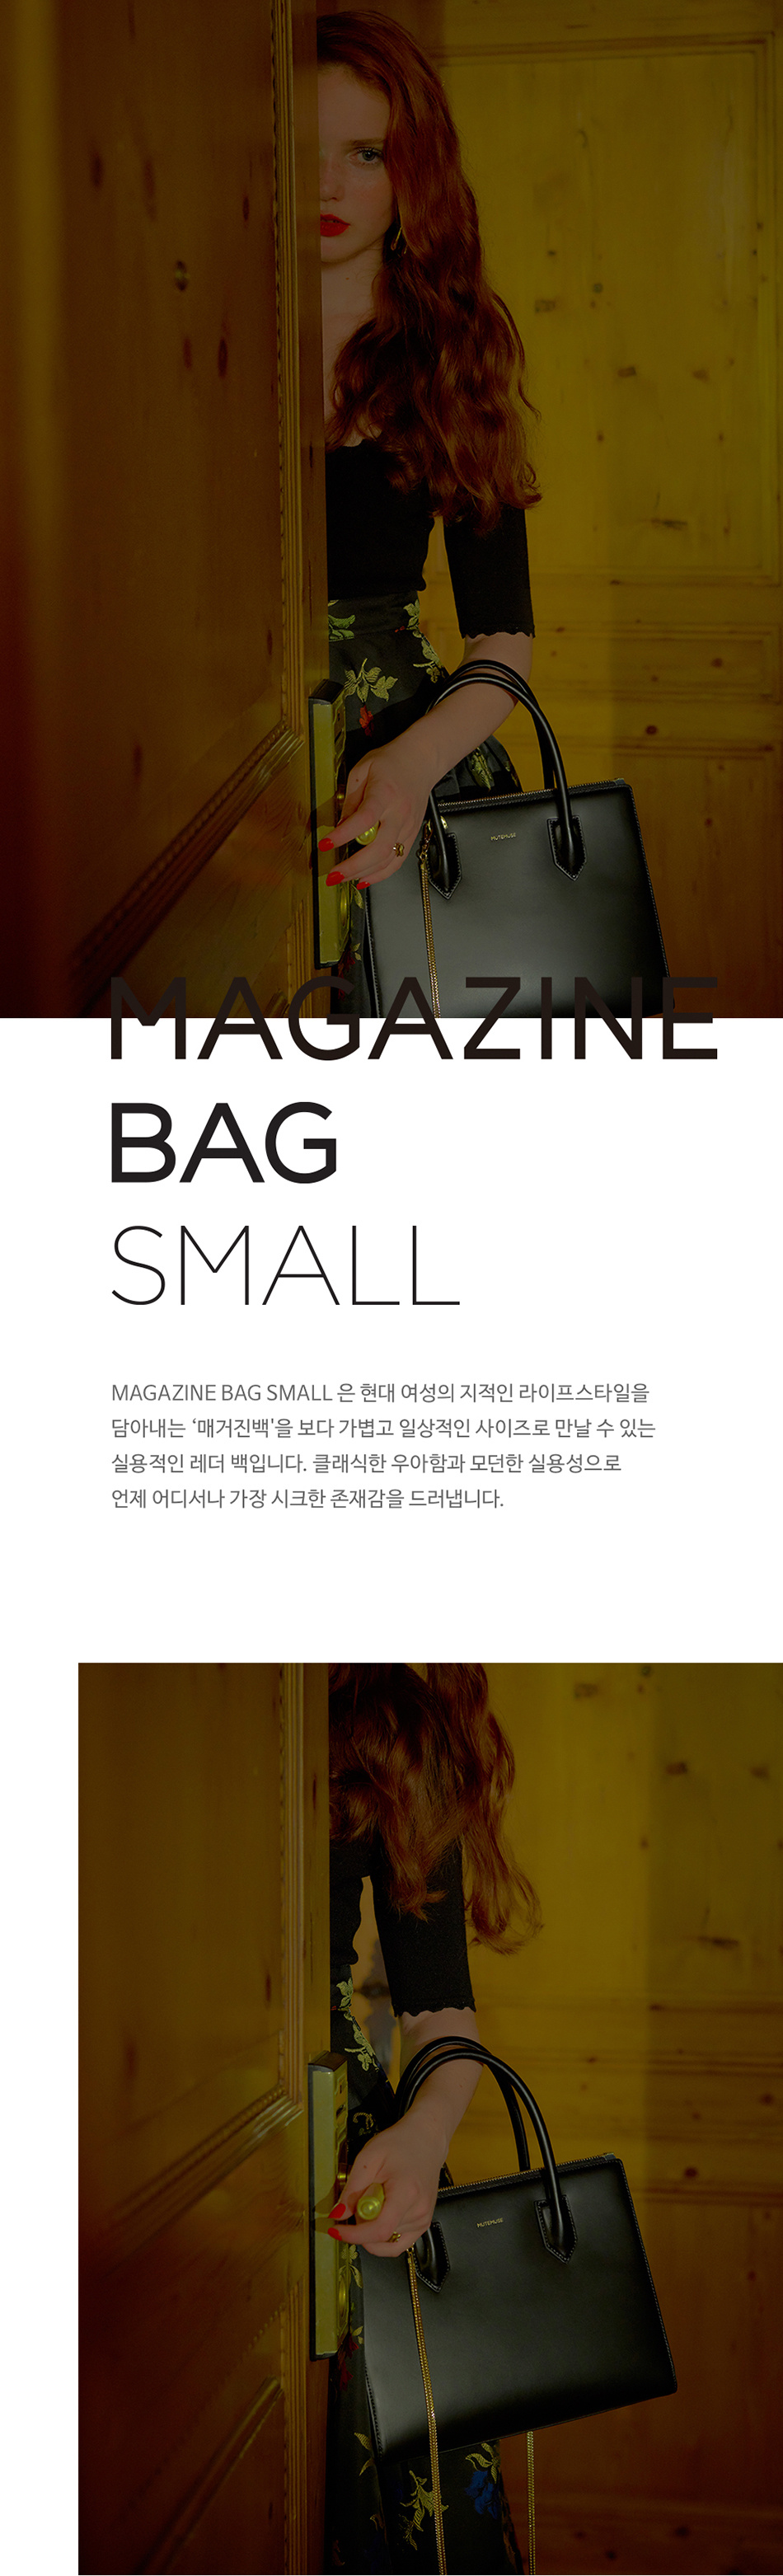 뮤트뮤즈(MUTEMUSE) MAGAZINE Bag Small (Ink)